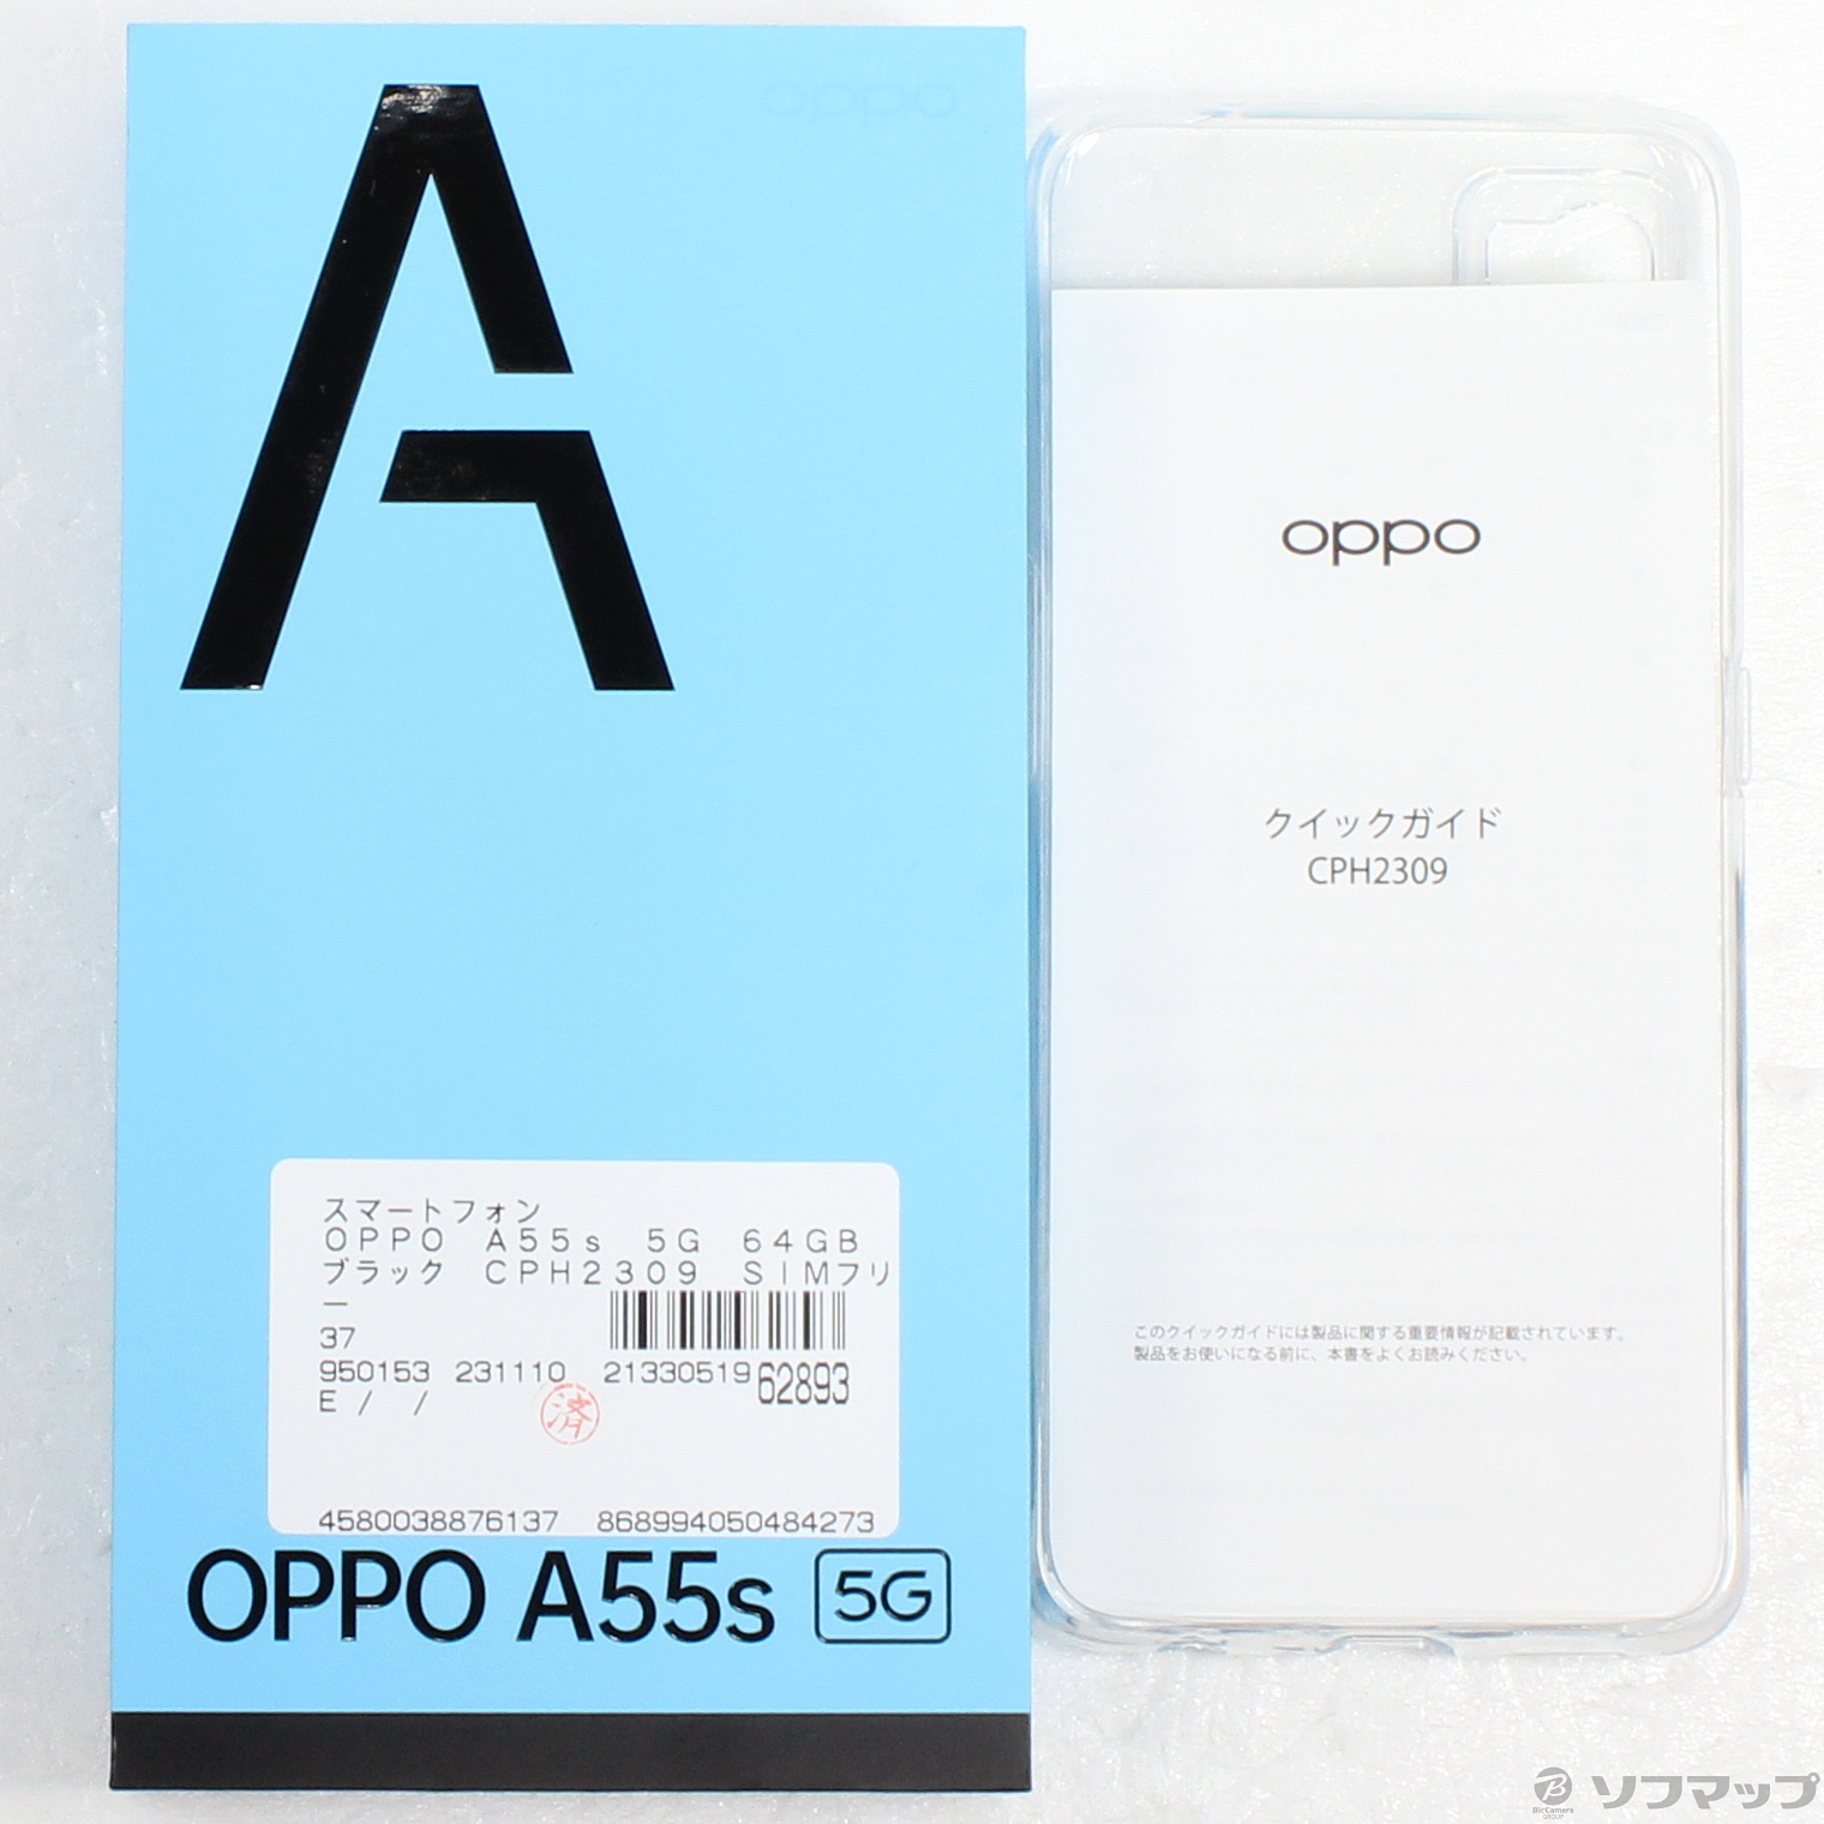 OPPO A55s 5G 白ロム ブラック - スマートフォン本体